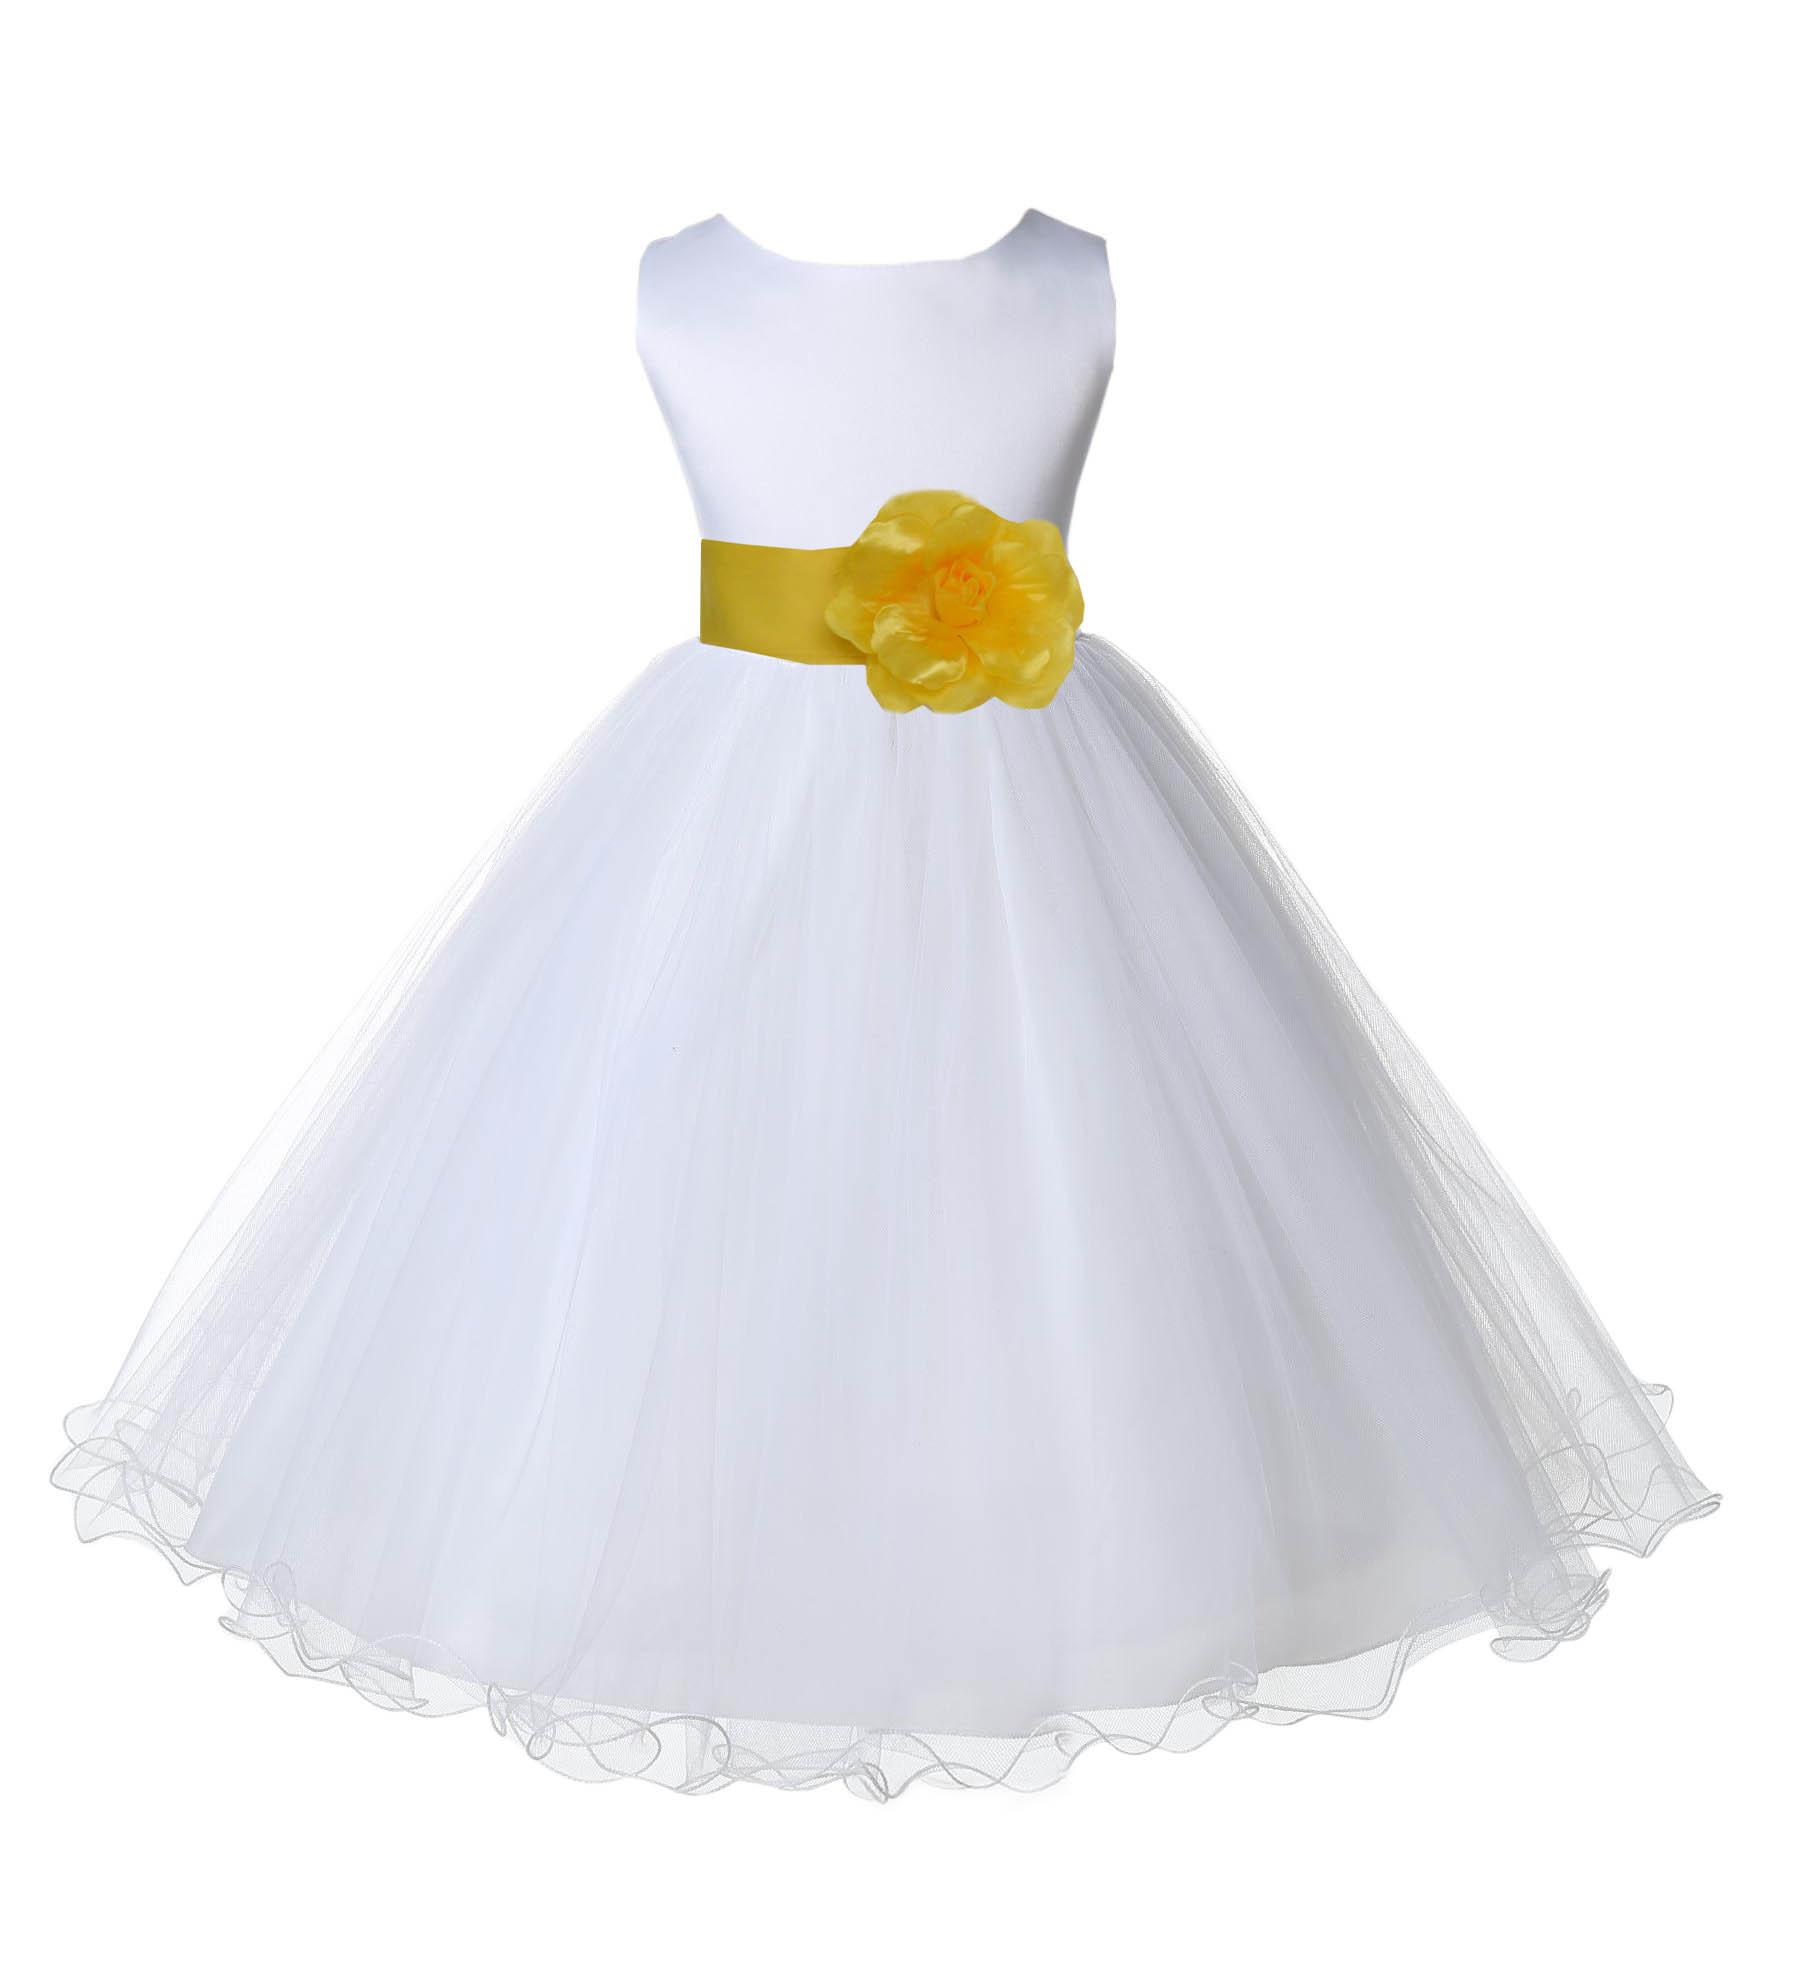 ekidsbridal White Tulle Rattail Edge Flower Girl Dress Social Event Recital Dress Beauty Pageant Gown Birthday Girl Dress Daily Dresses 829S